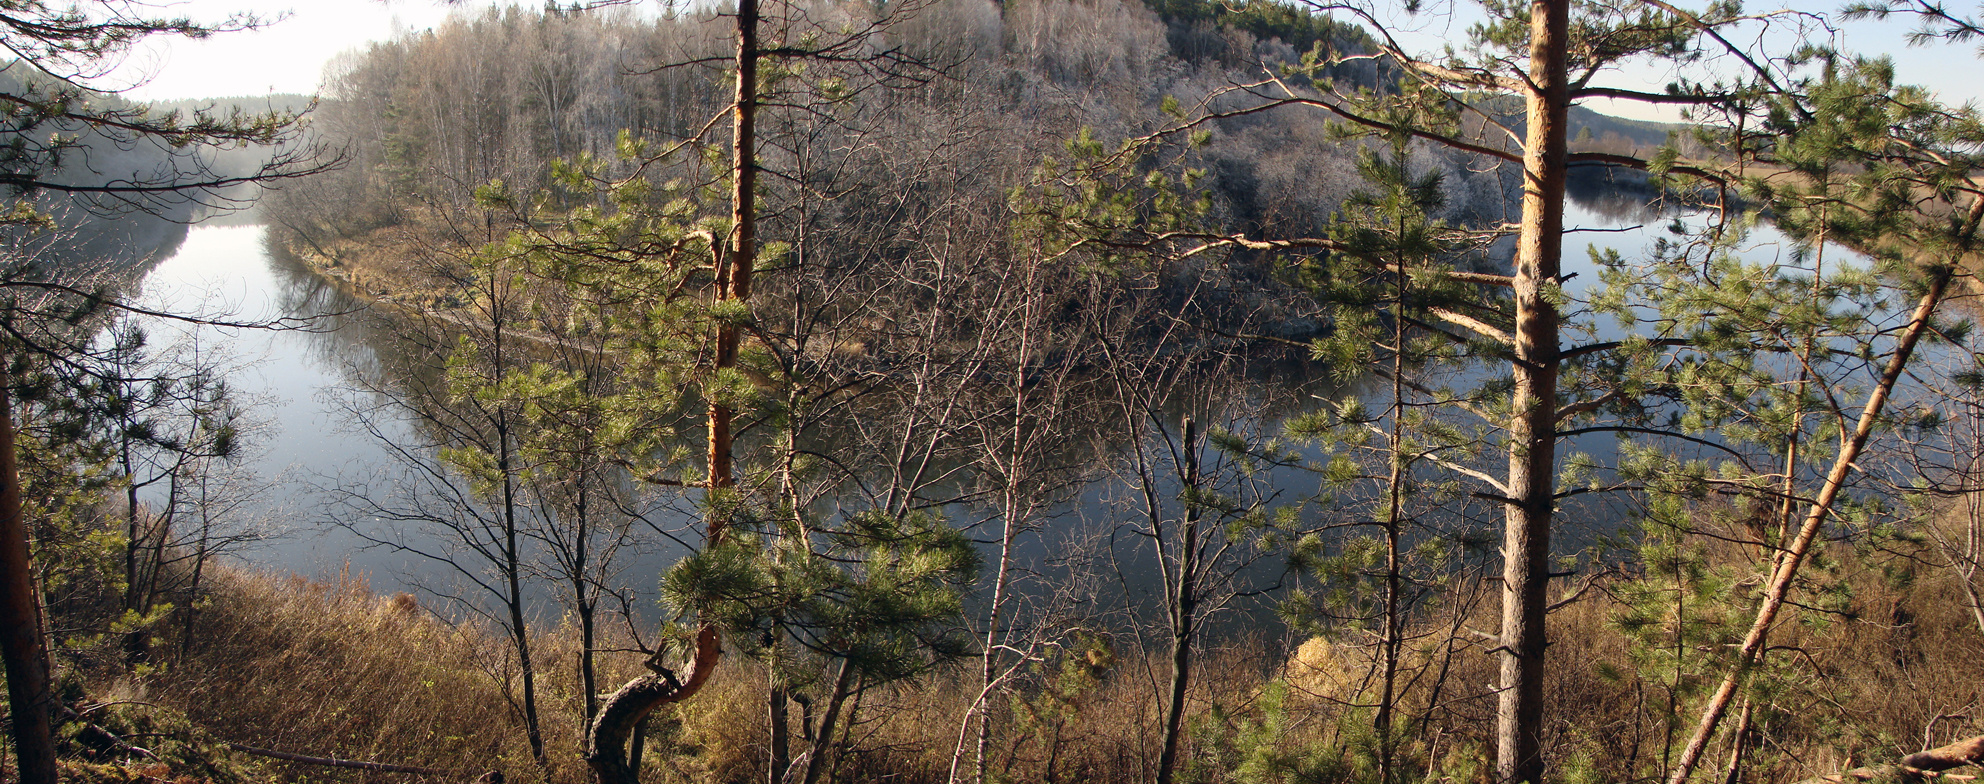 Сохаревская пещера и Сохаревская писаница. Панорама на реку Реж с вершины скалы Боруха